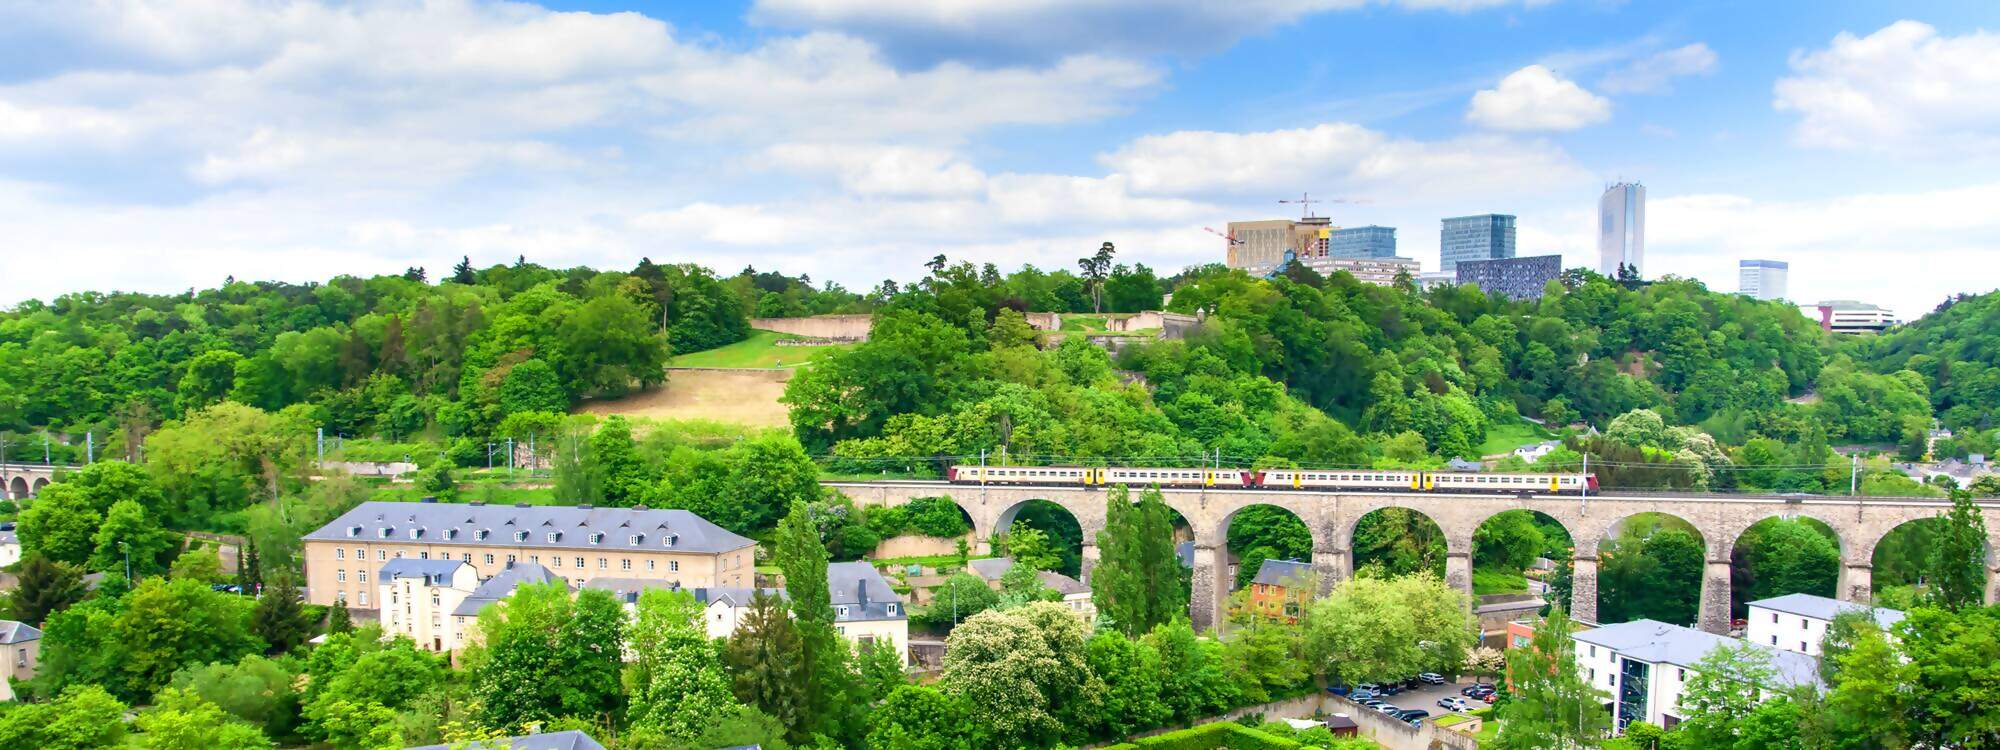 Die Stadt Luxemburg